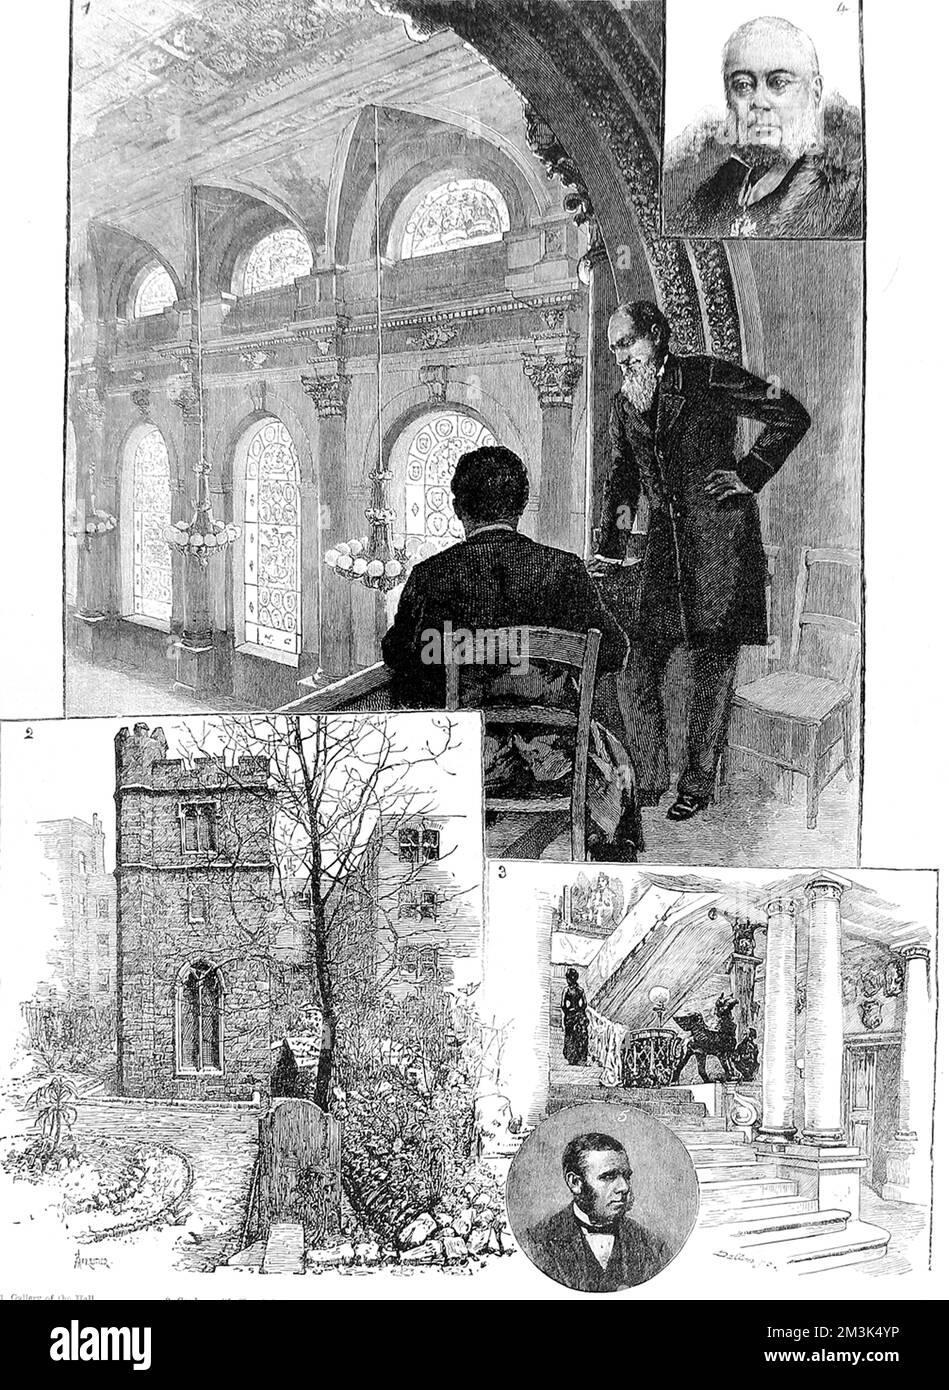 Eine Reihe von Szenen, die mit der ClothWorkers' Company, einer der London City Guilds, in Verbindung stehen. Stockfoto